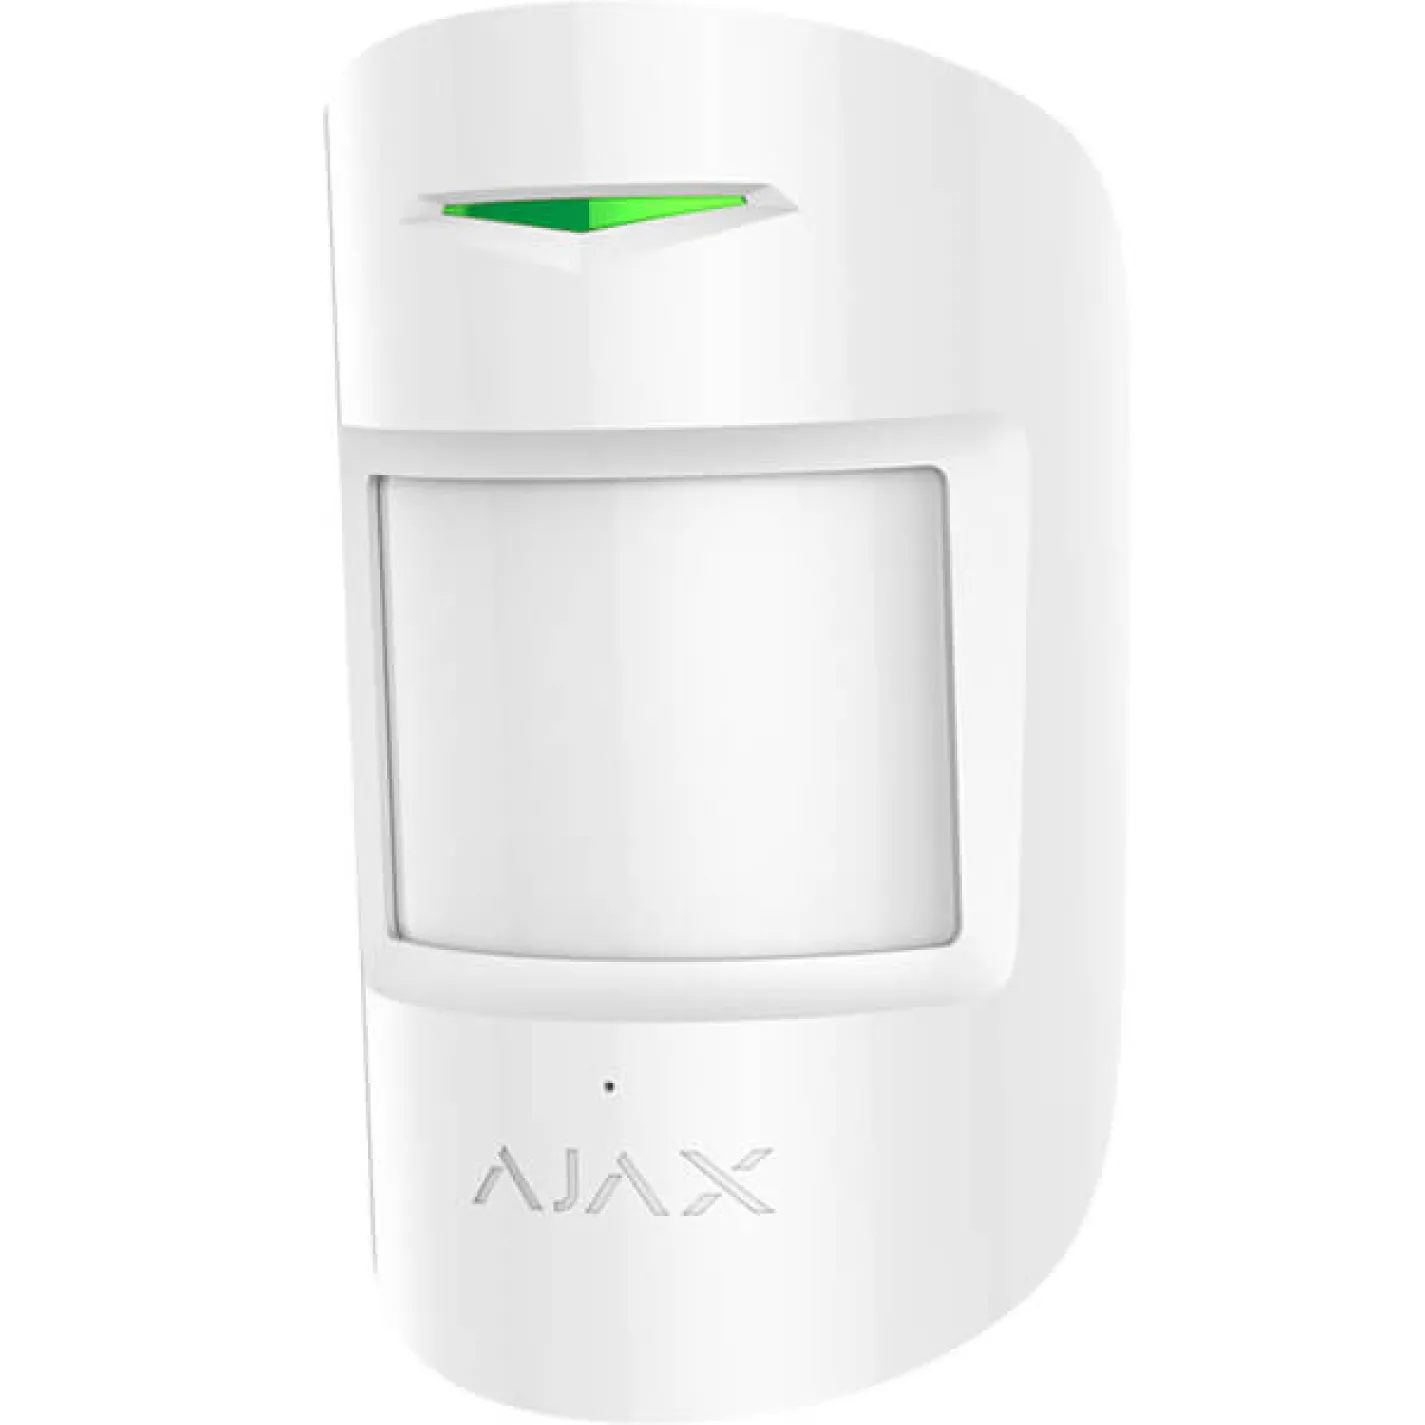 Комплект охранной сигнализации Ajax StarterKit белый - Фото 4